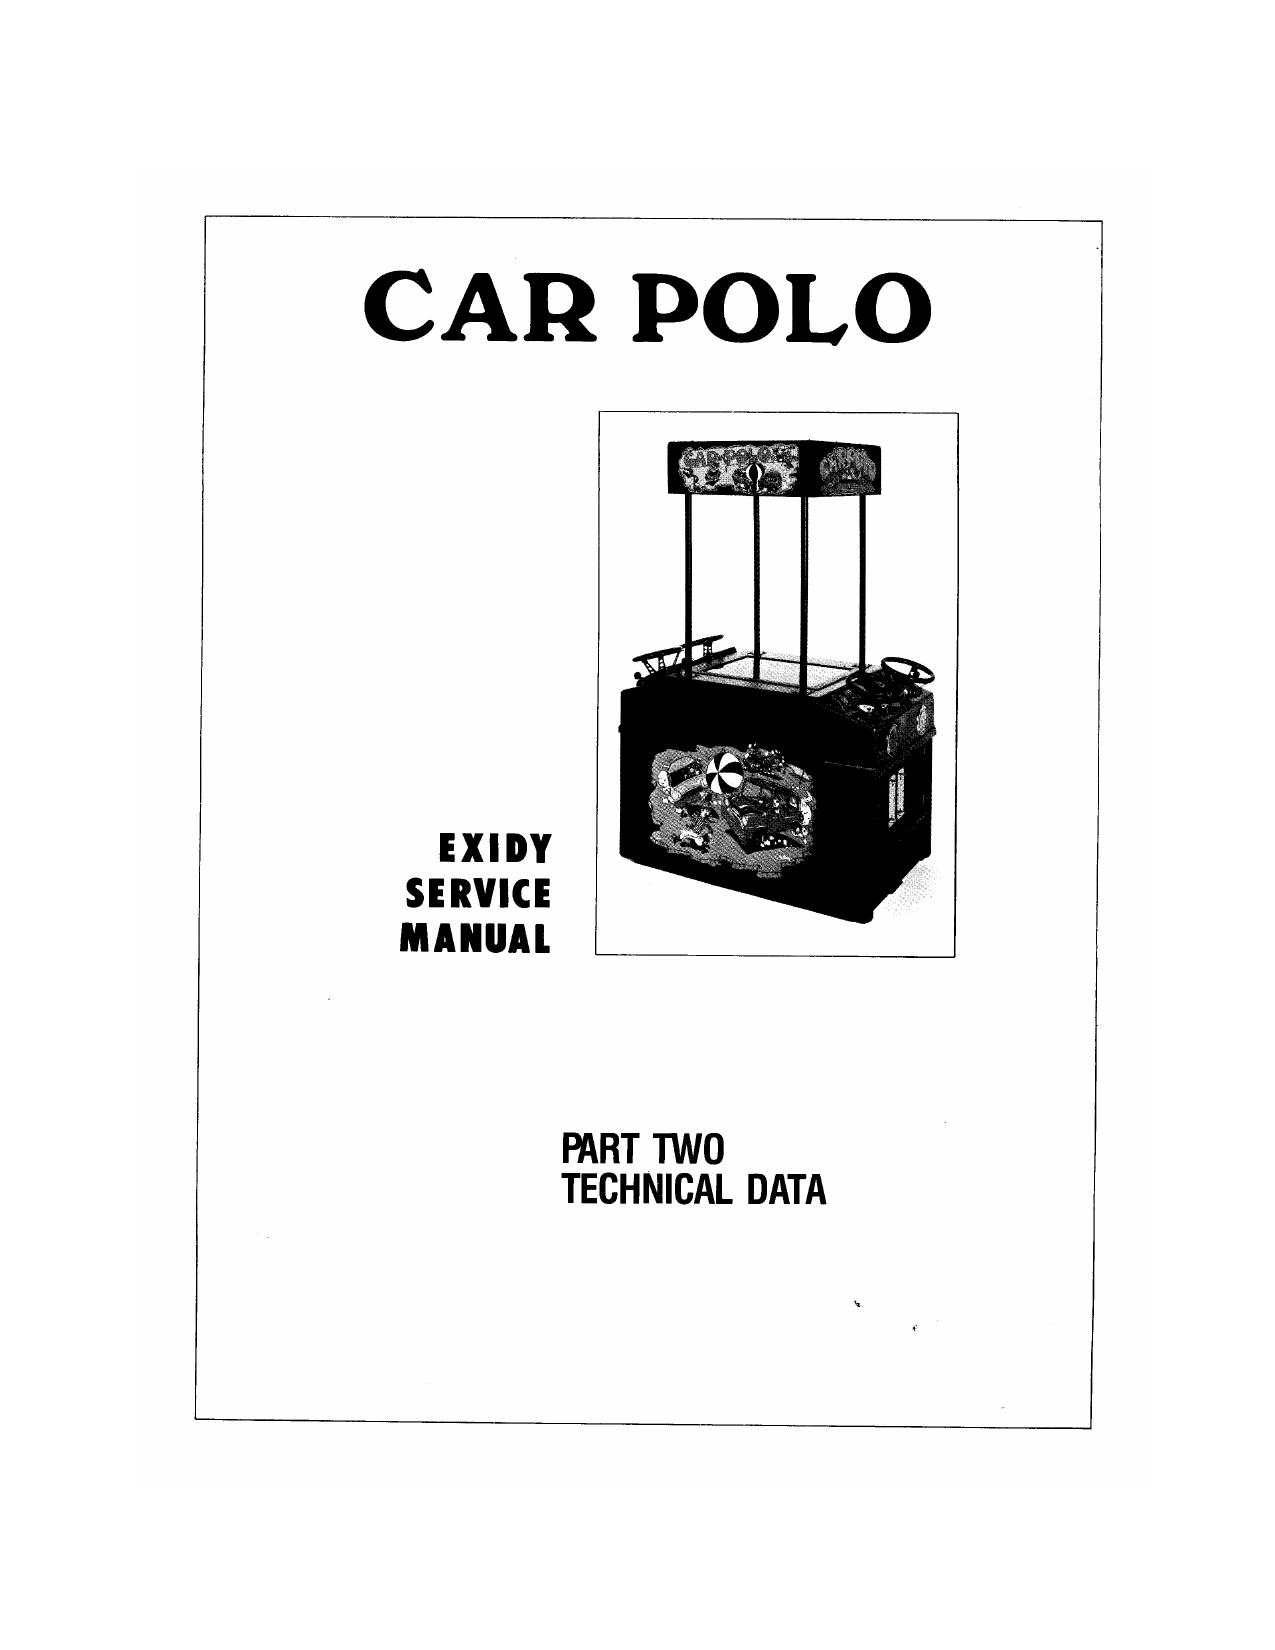 Car Polo